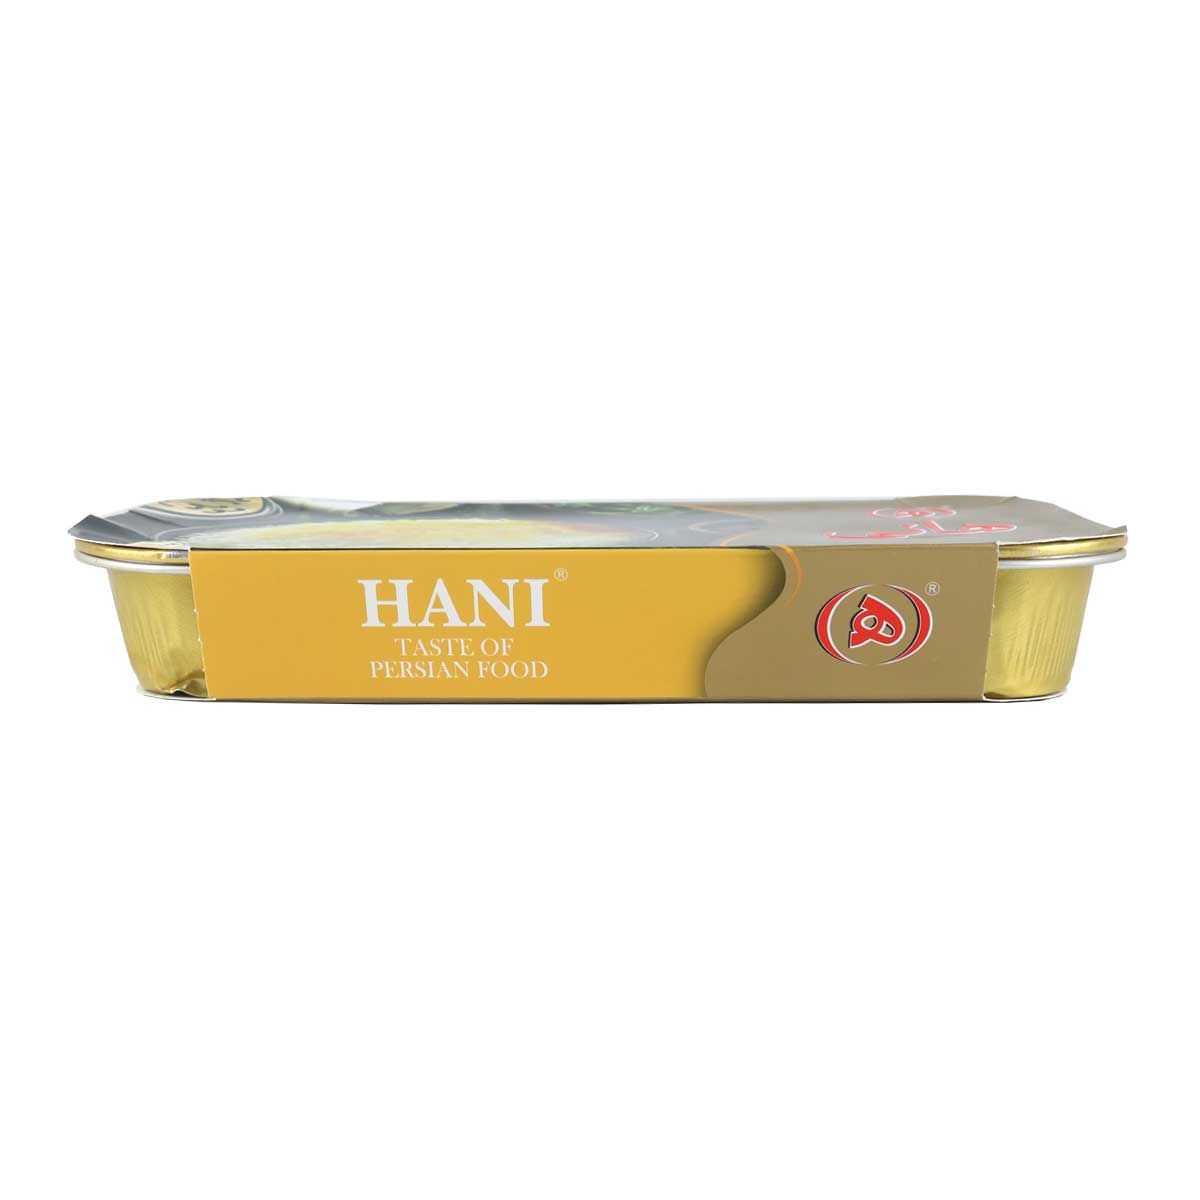 Hani plain rice 330 grams